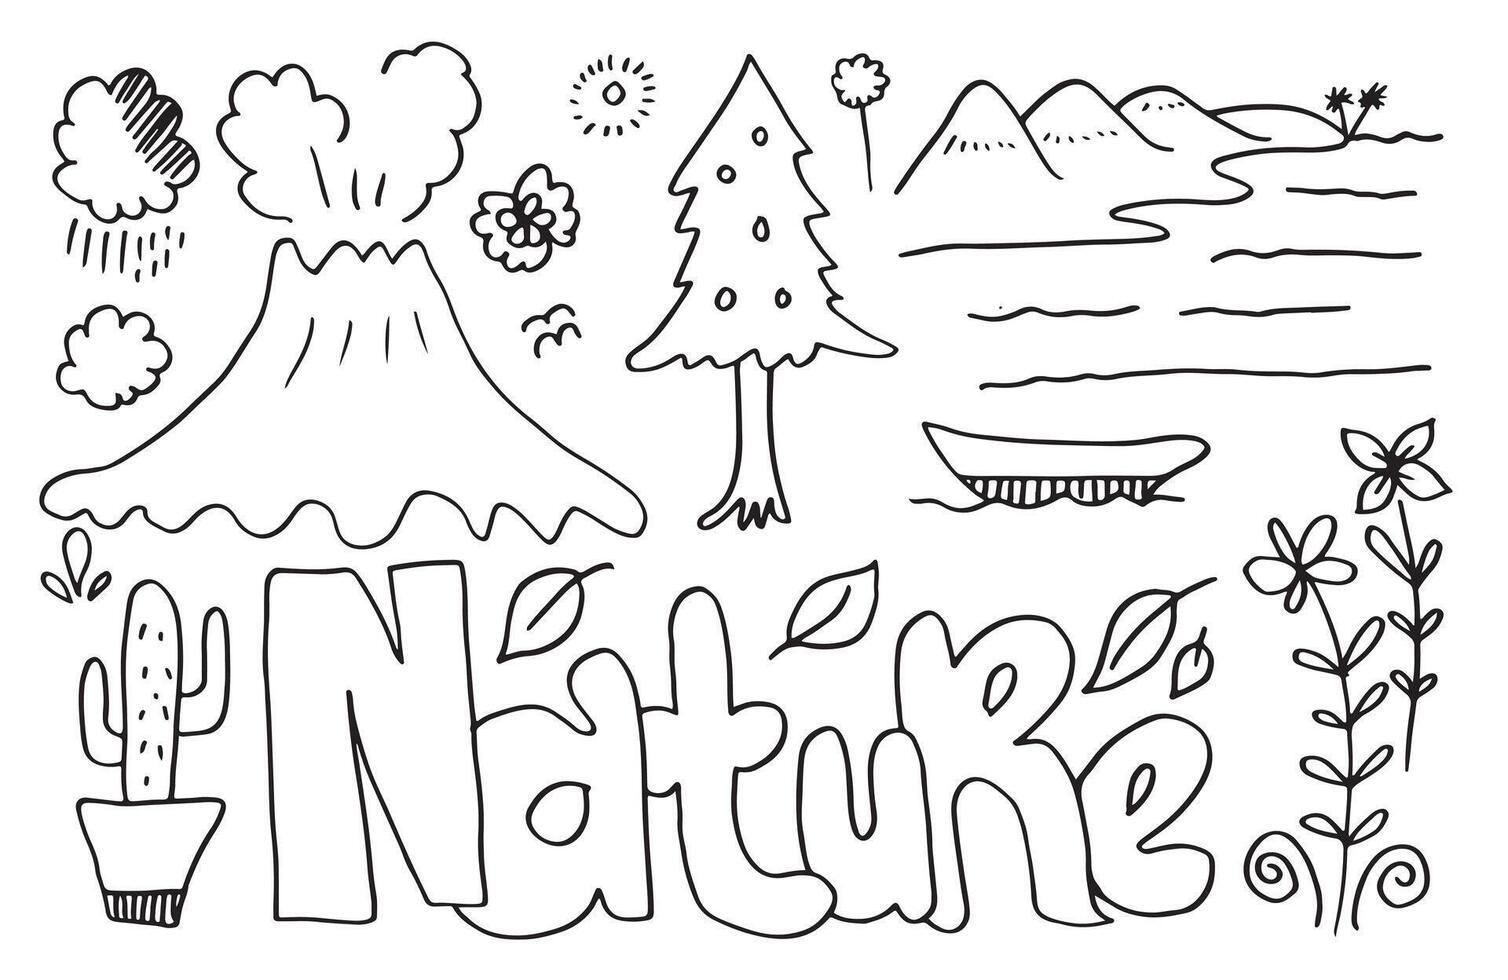 natuur typografie met hand- getrokken heuvels, vogels, bladeren, wolken, water en andere elementen. web banier voor andere elementen van natuur. vector illustratie